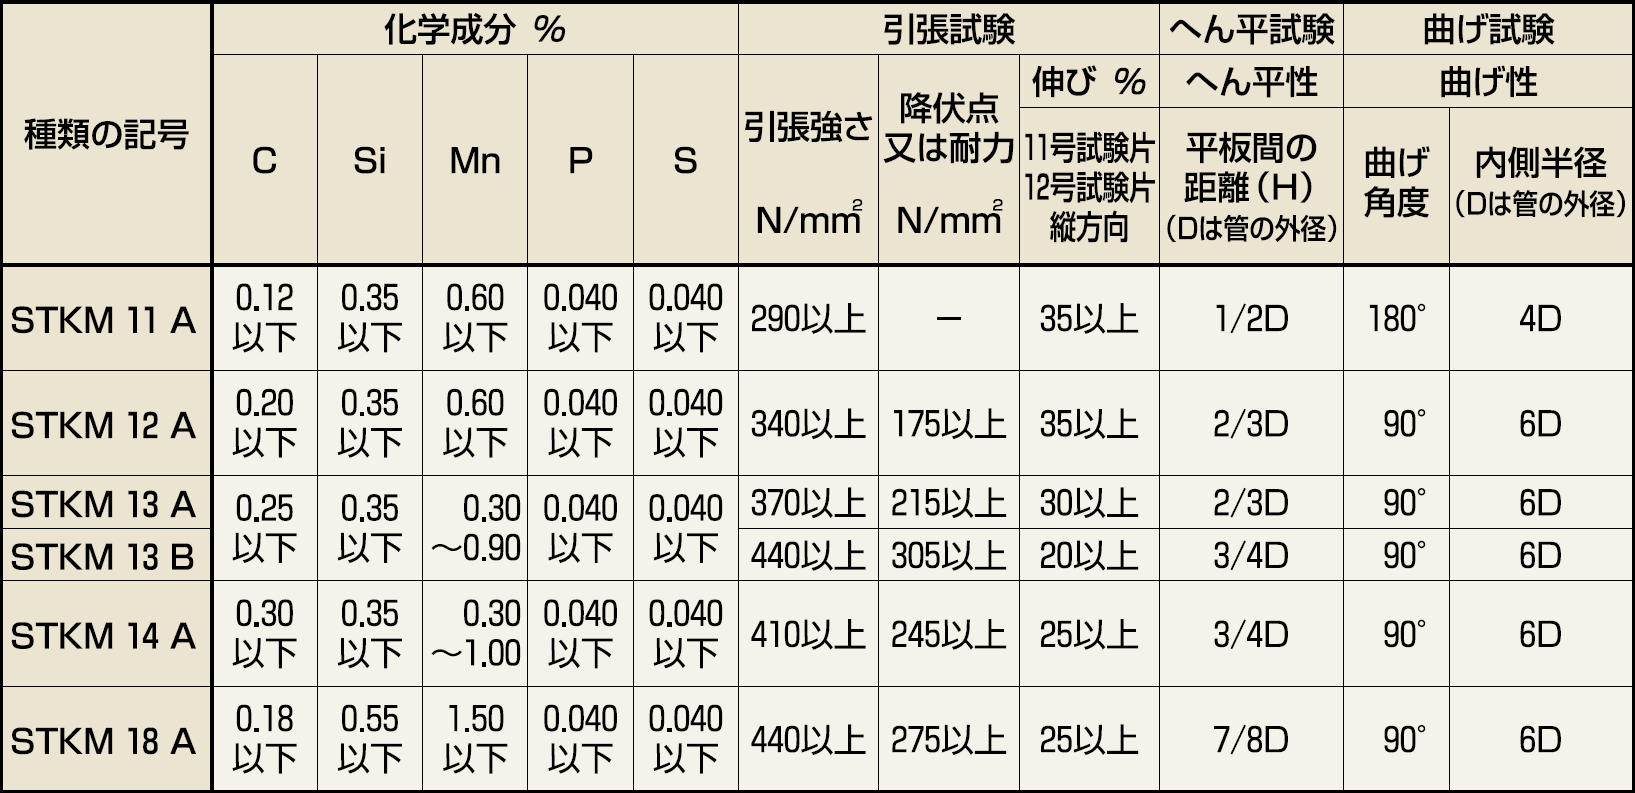 日本統計機 社員配置表S190 S190 - 1